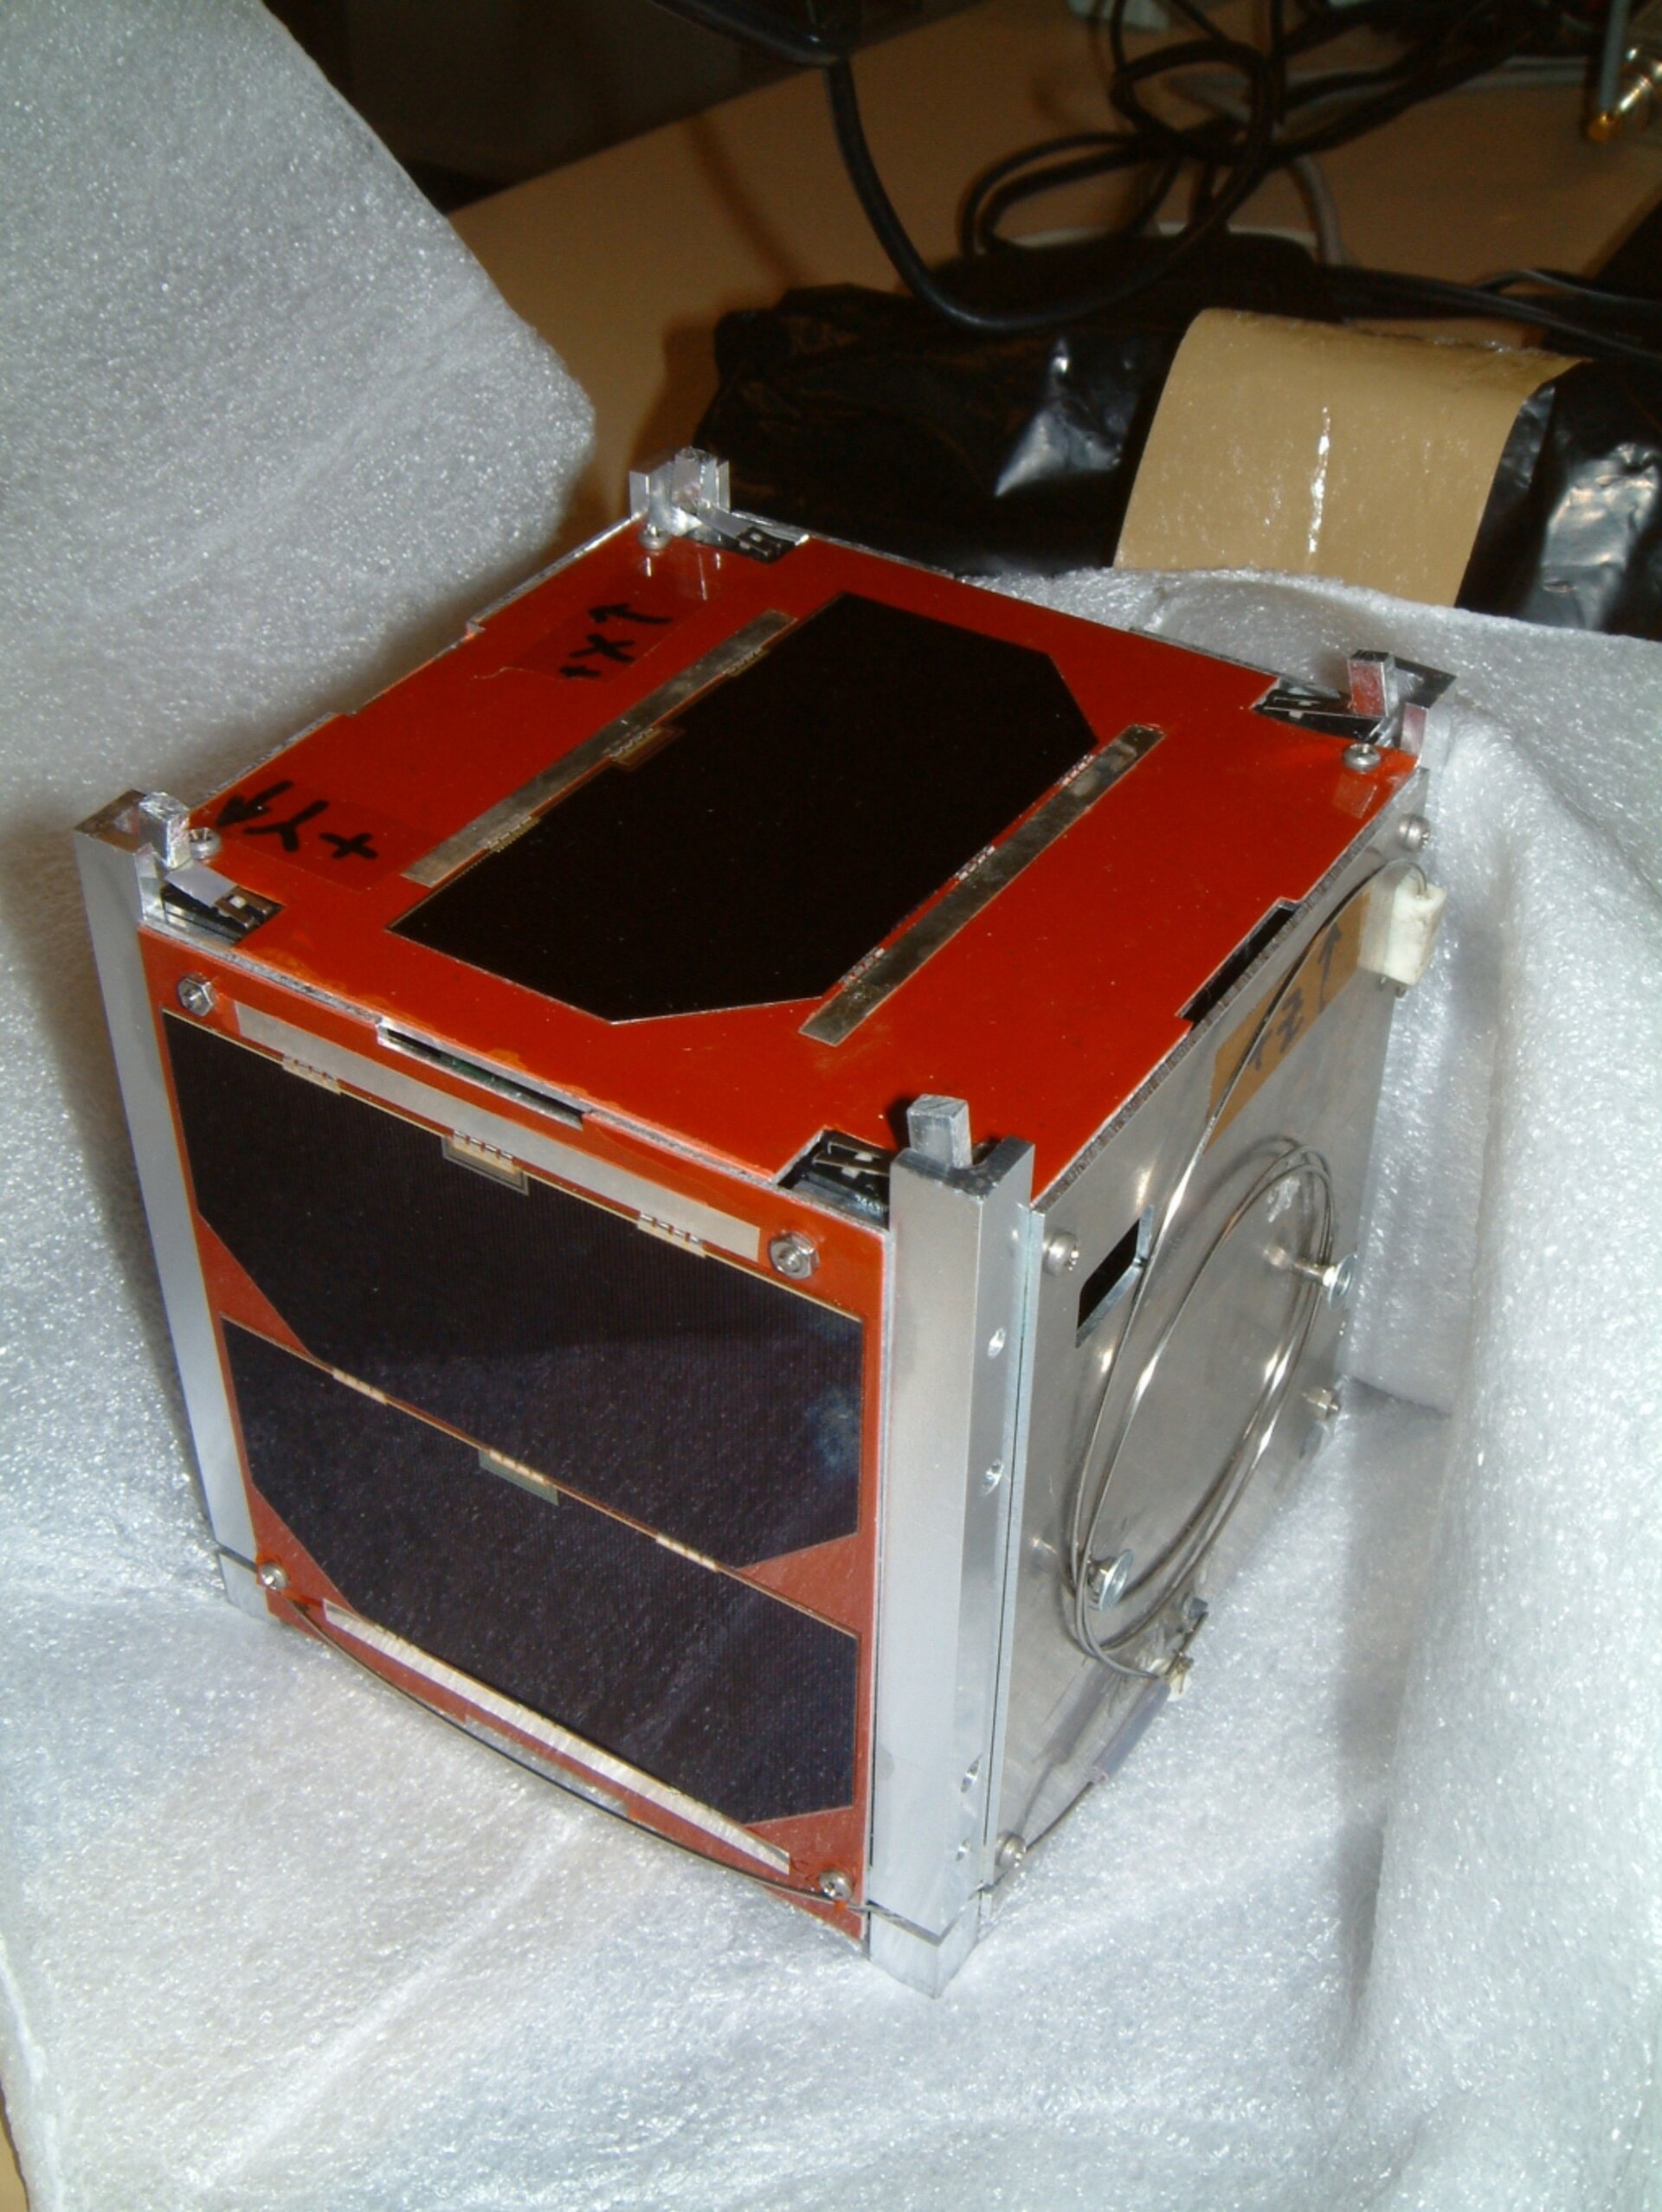 CubeSat UWE-1